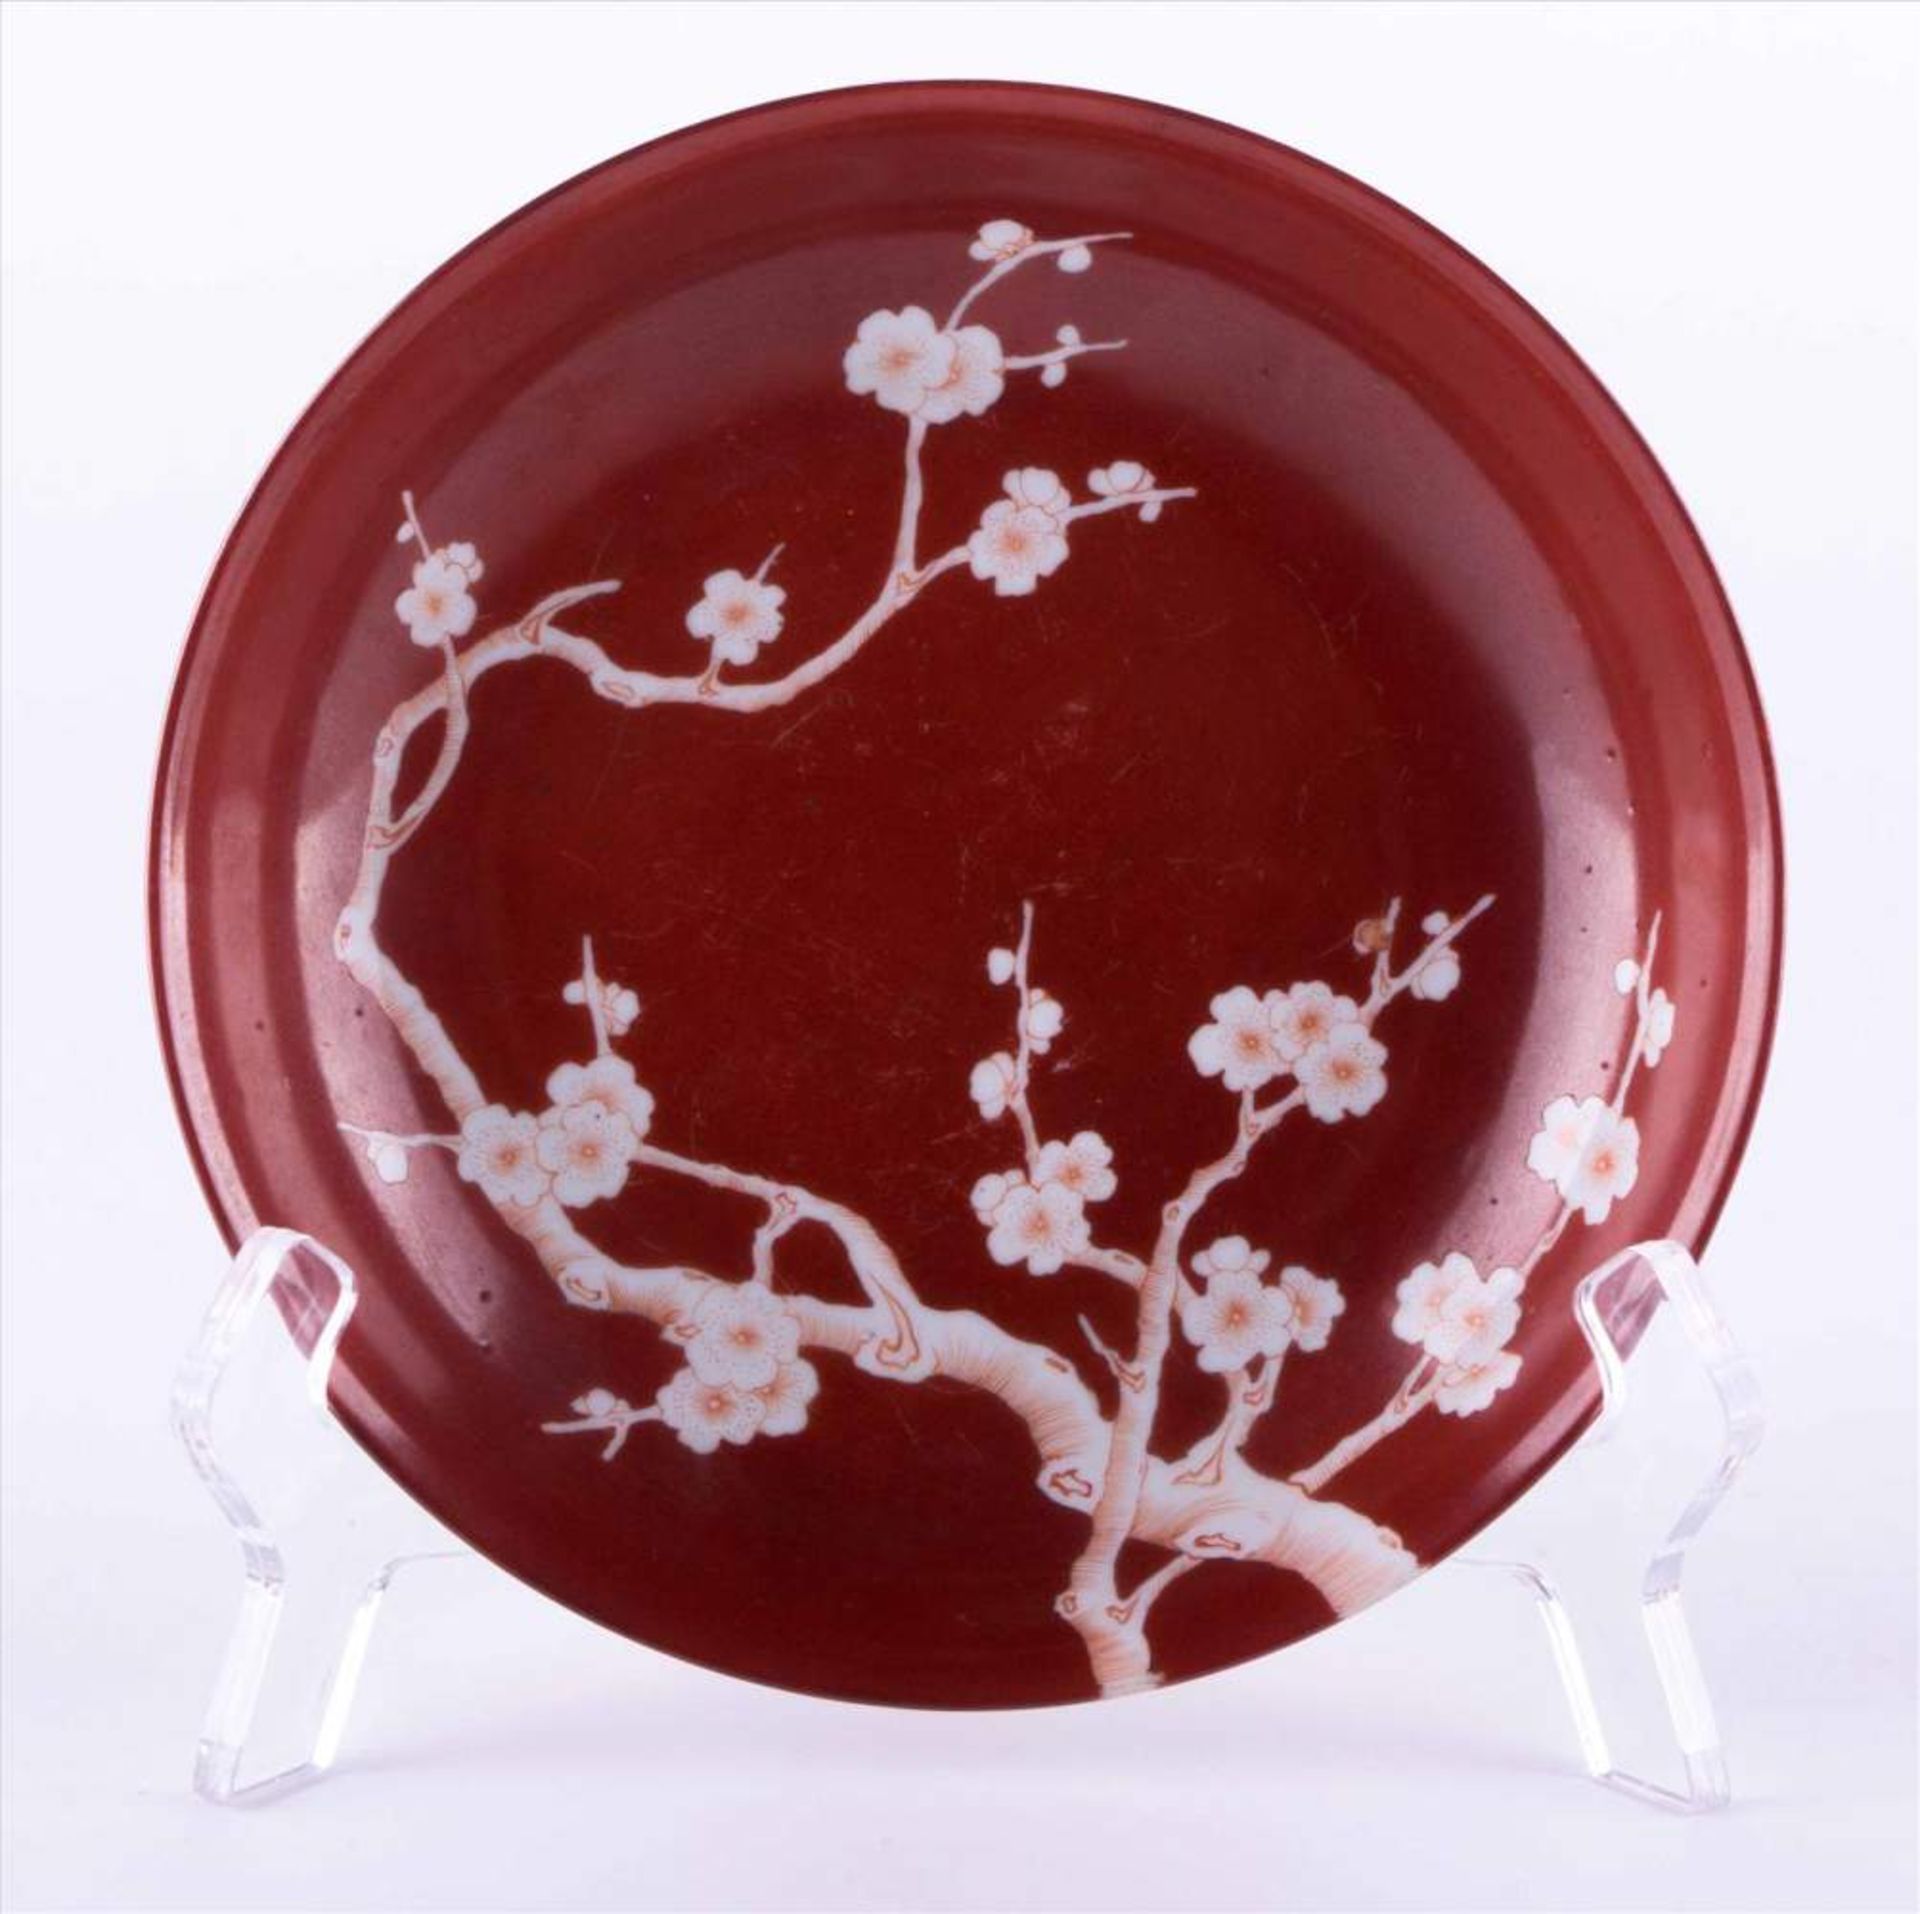 Schale China 19./20. Jhd. / Bowl, China 19th/20th century verziert mit Baum- und Blütendekor, unterm